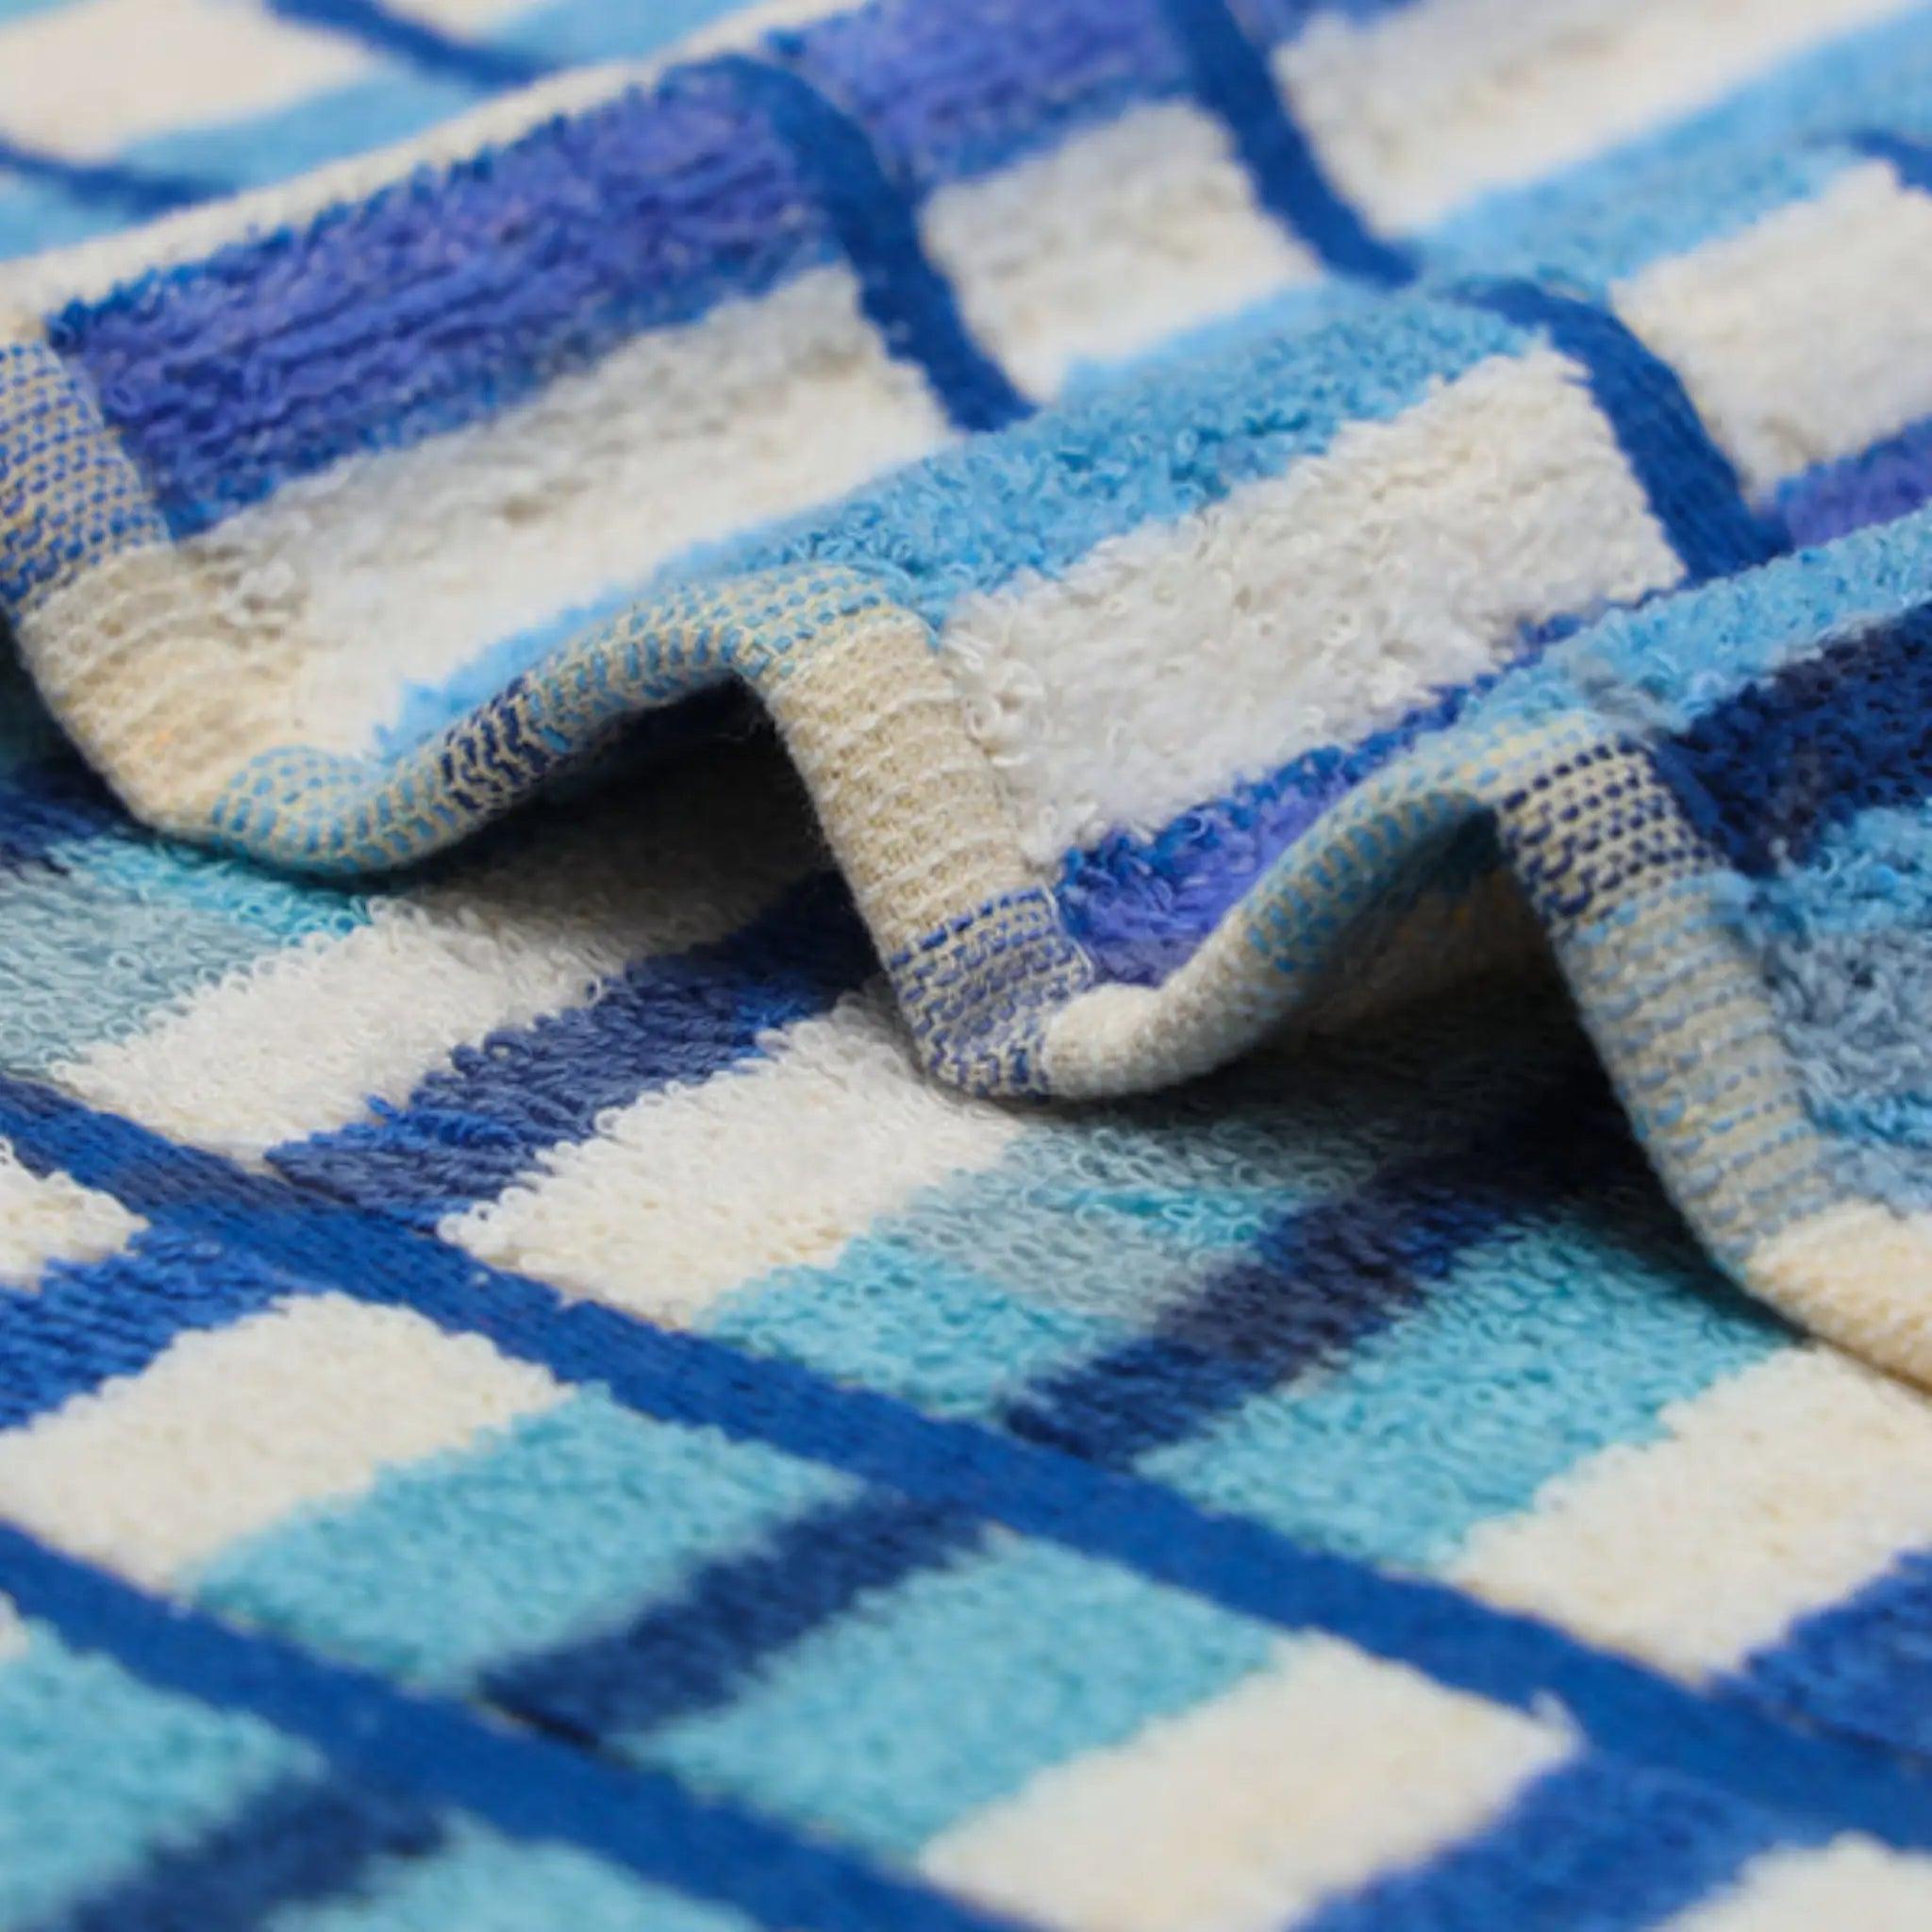 Premium Quality Cotton Stripe Towel - Dash Racegear 